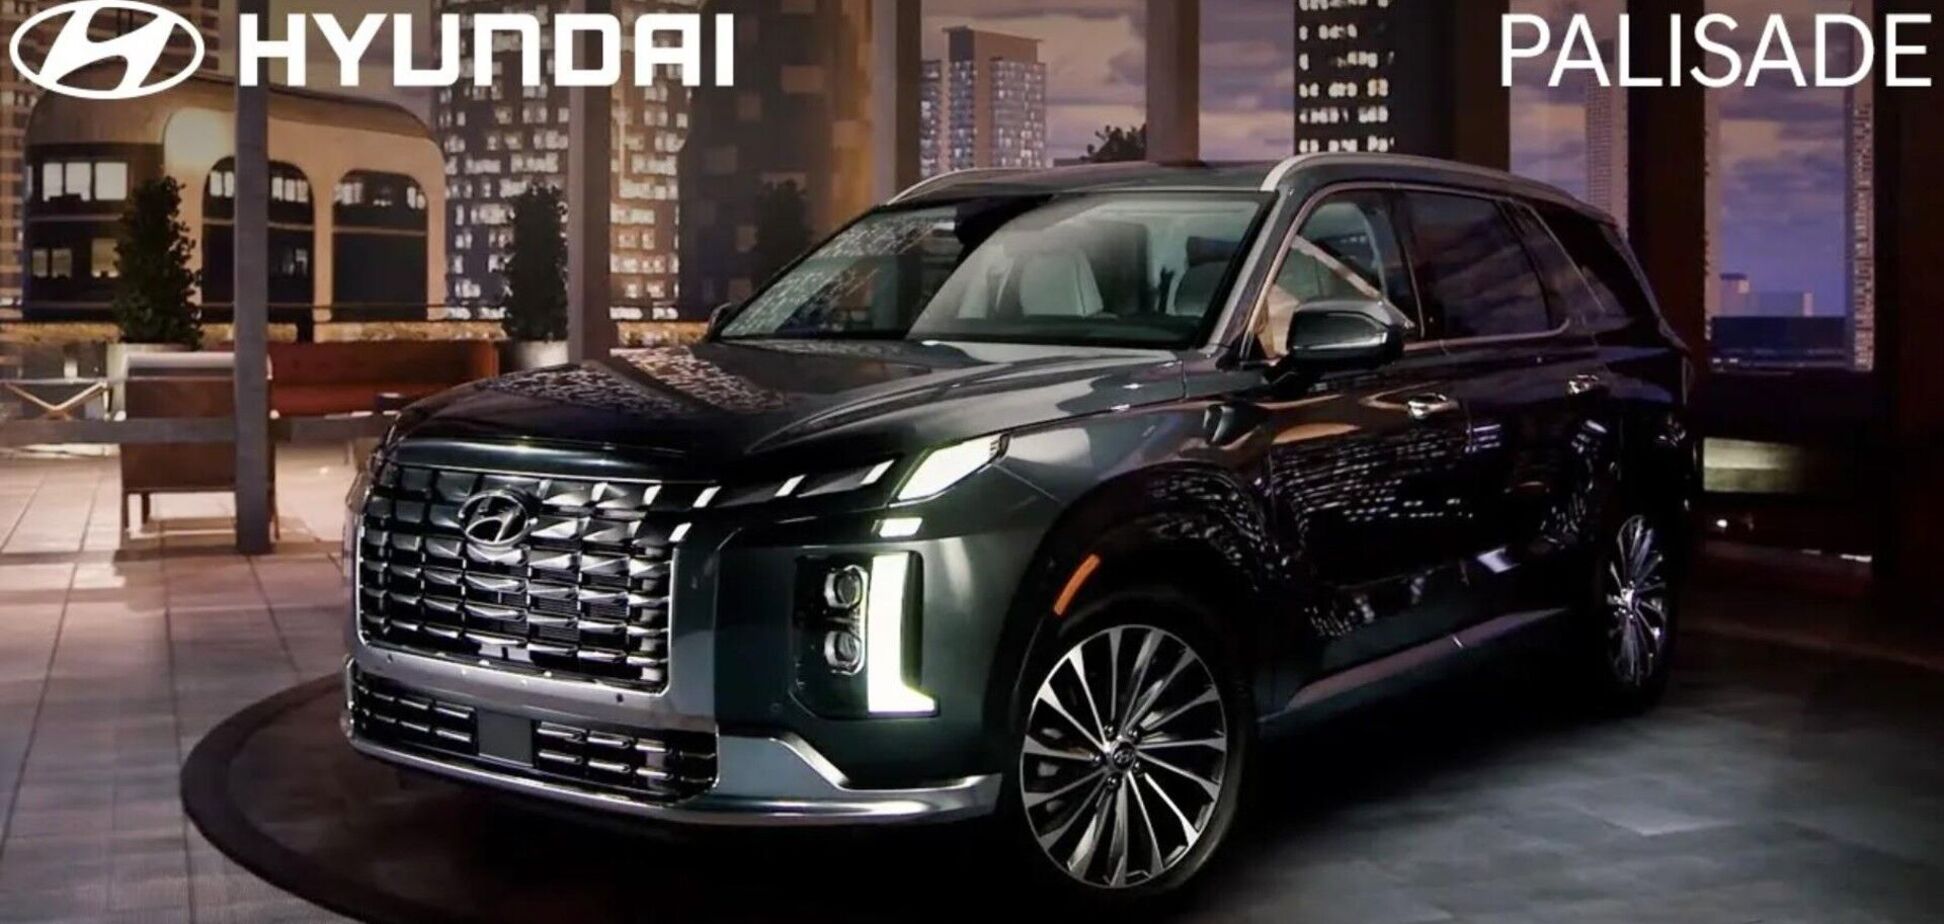 Видео с новым Hyundai Palisade случайно рассекретили до премьеры